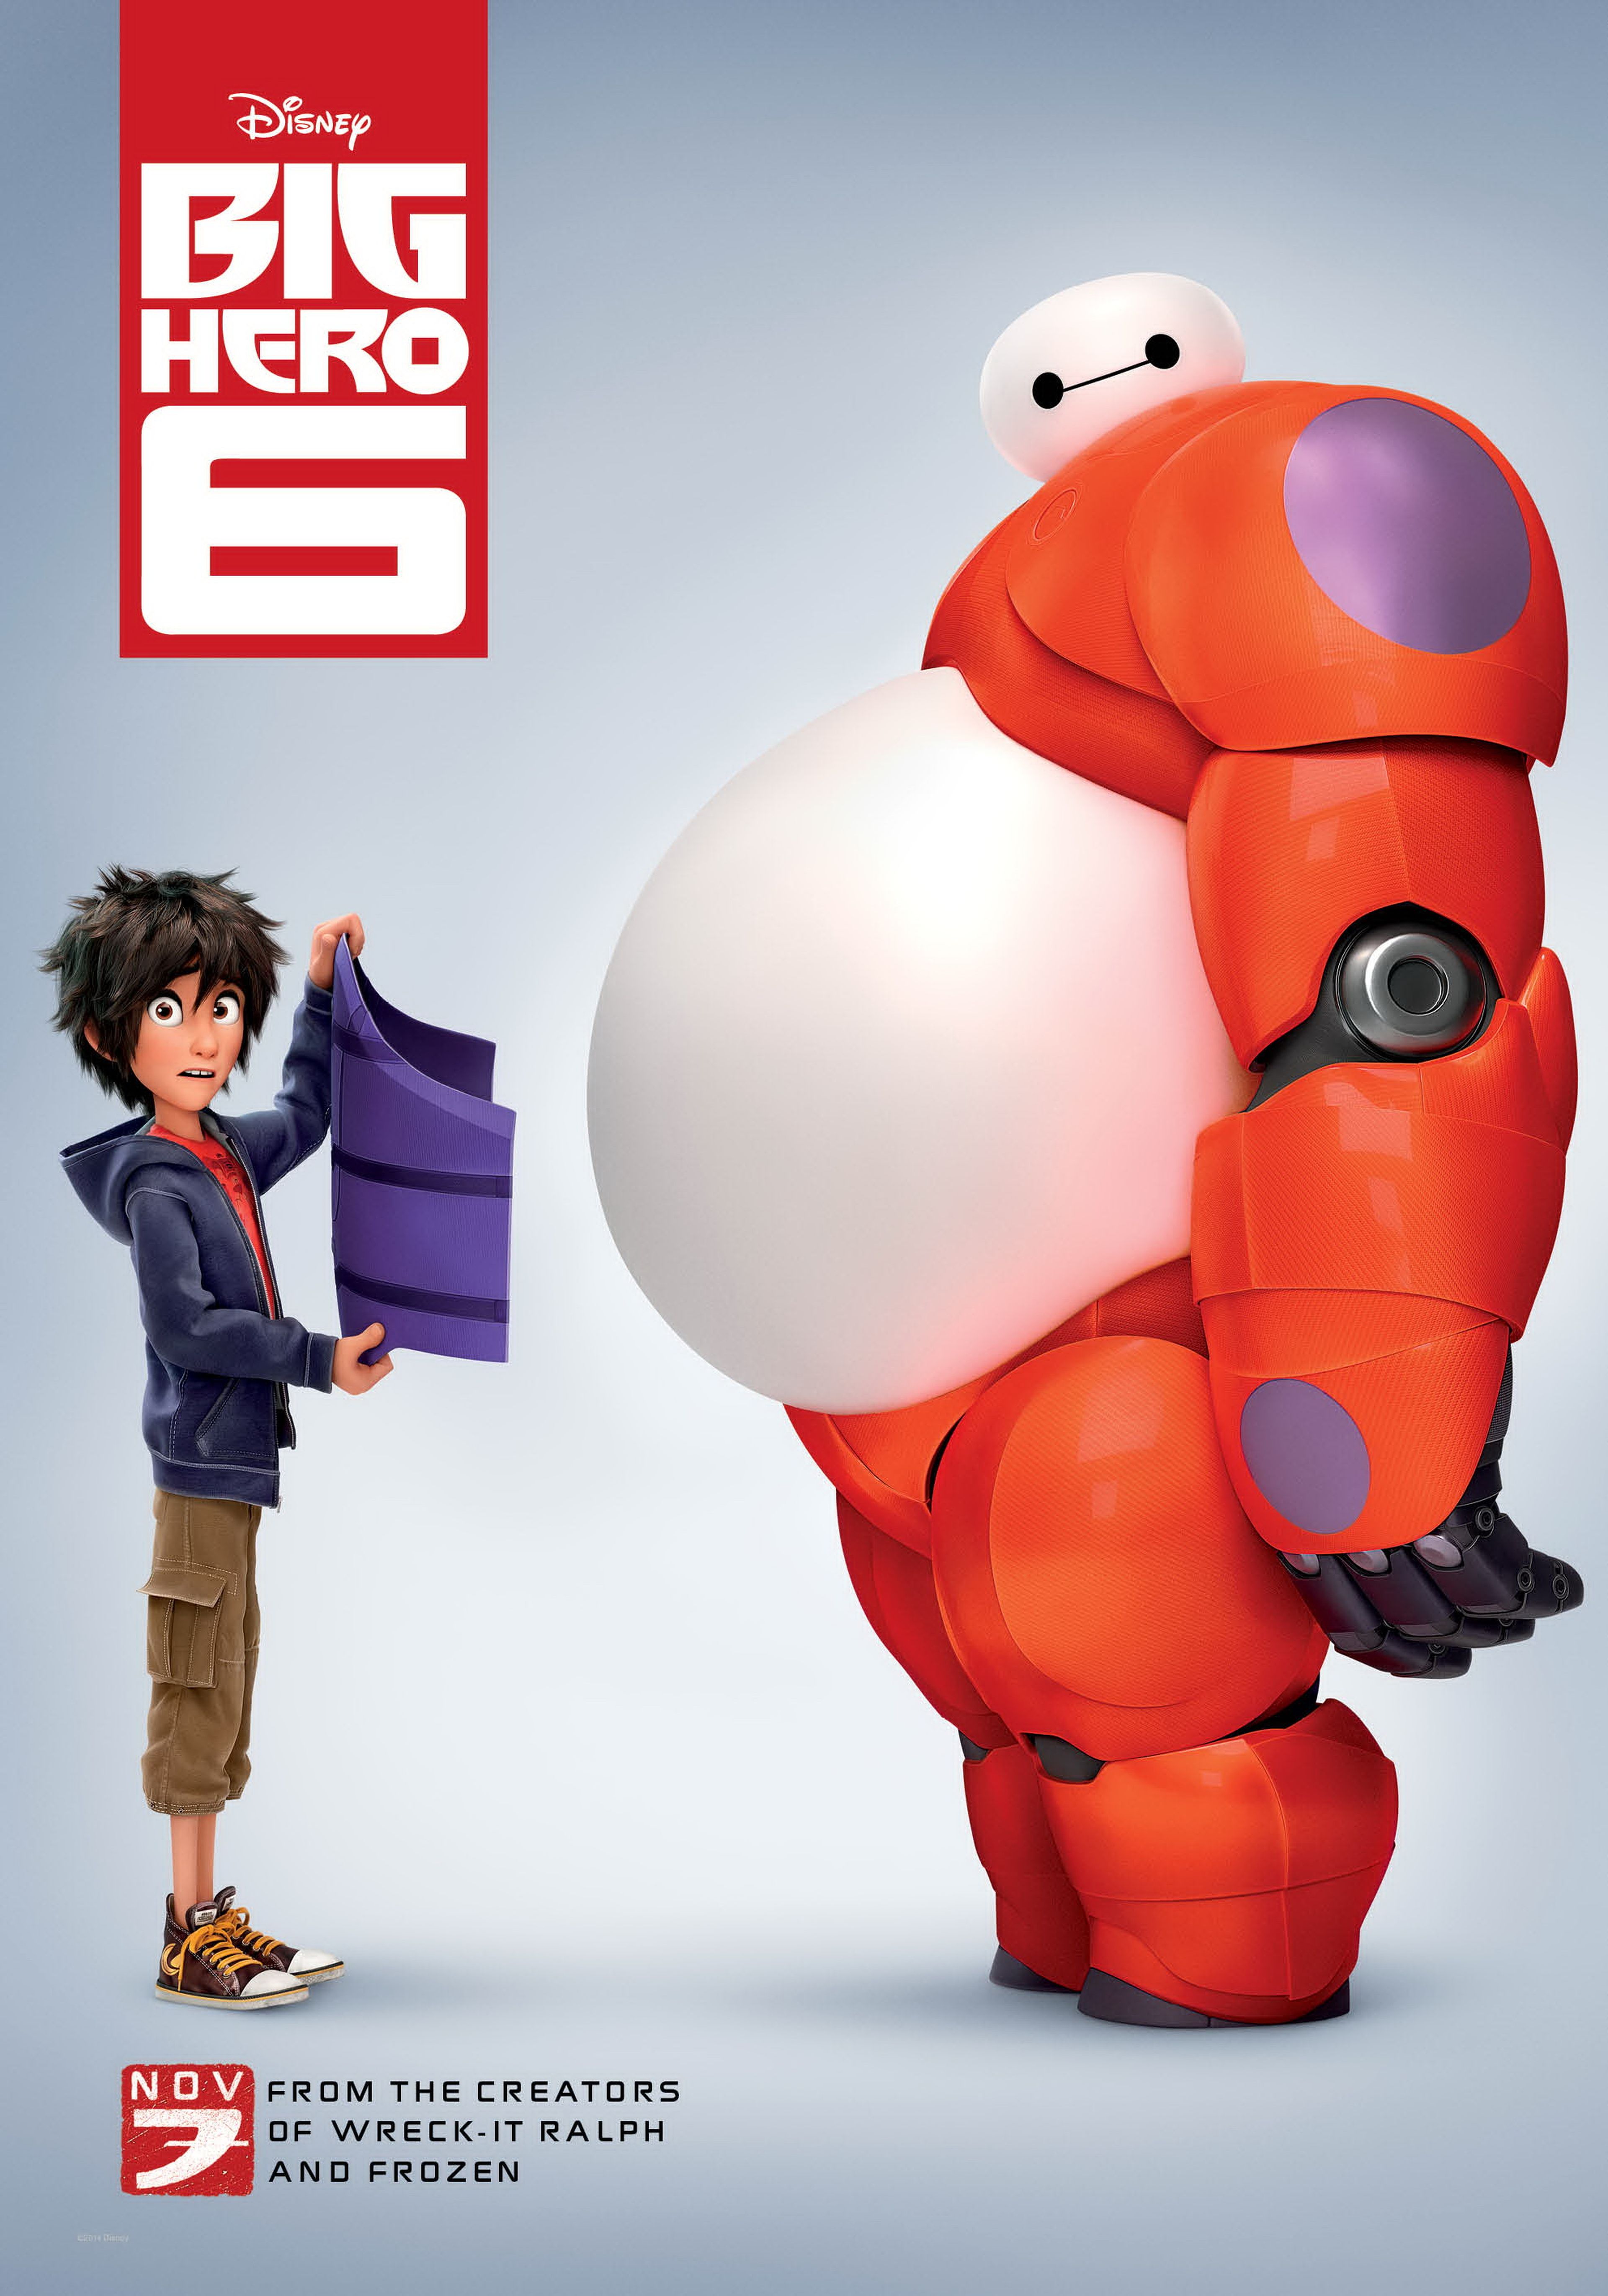 Oscar 2015: La mejor película de animación es Big Hero 6